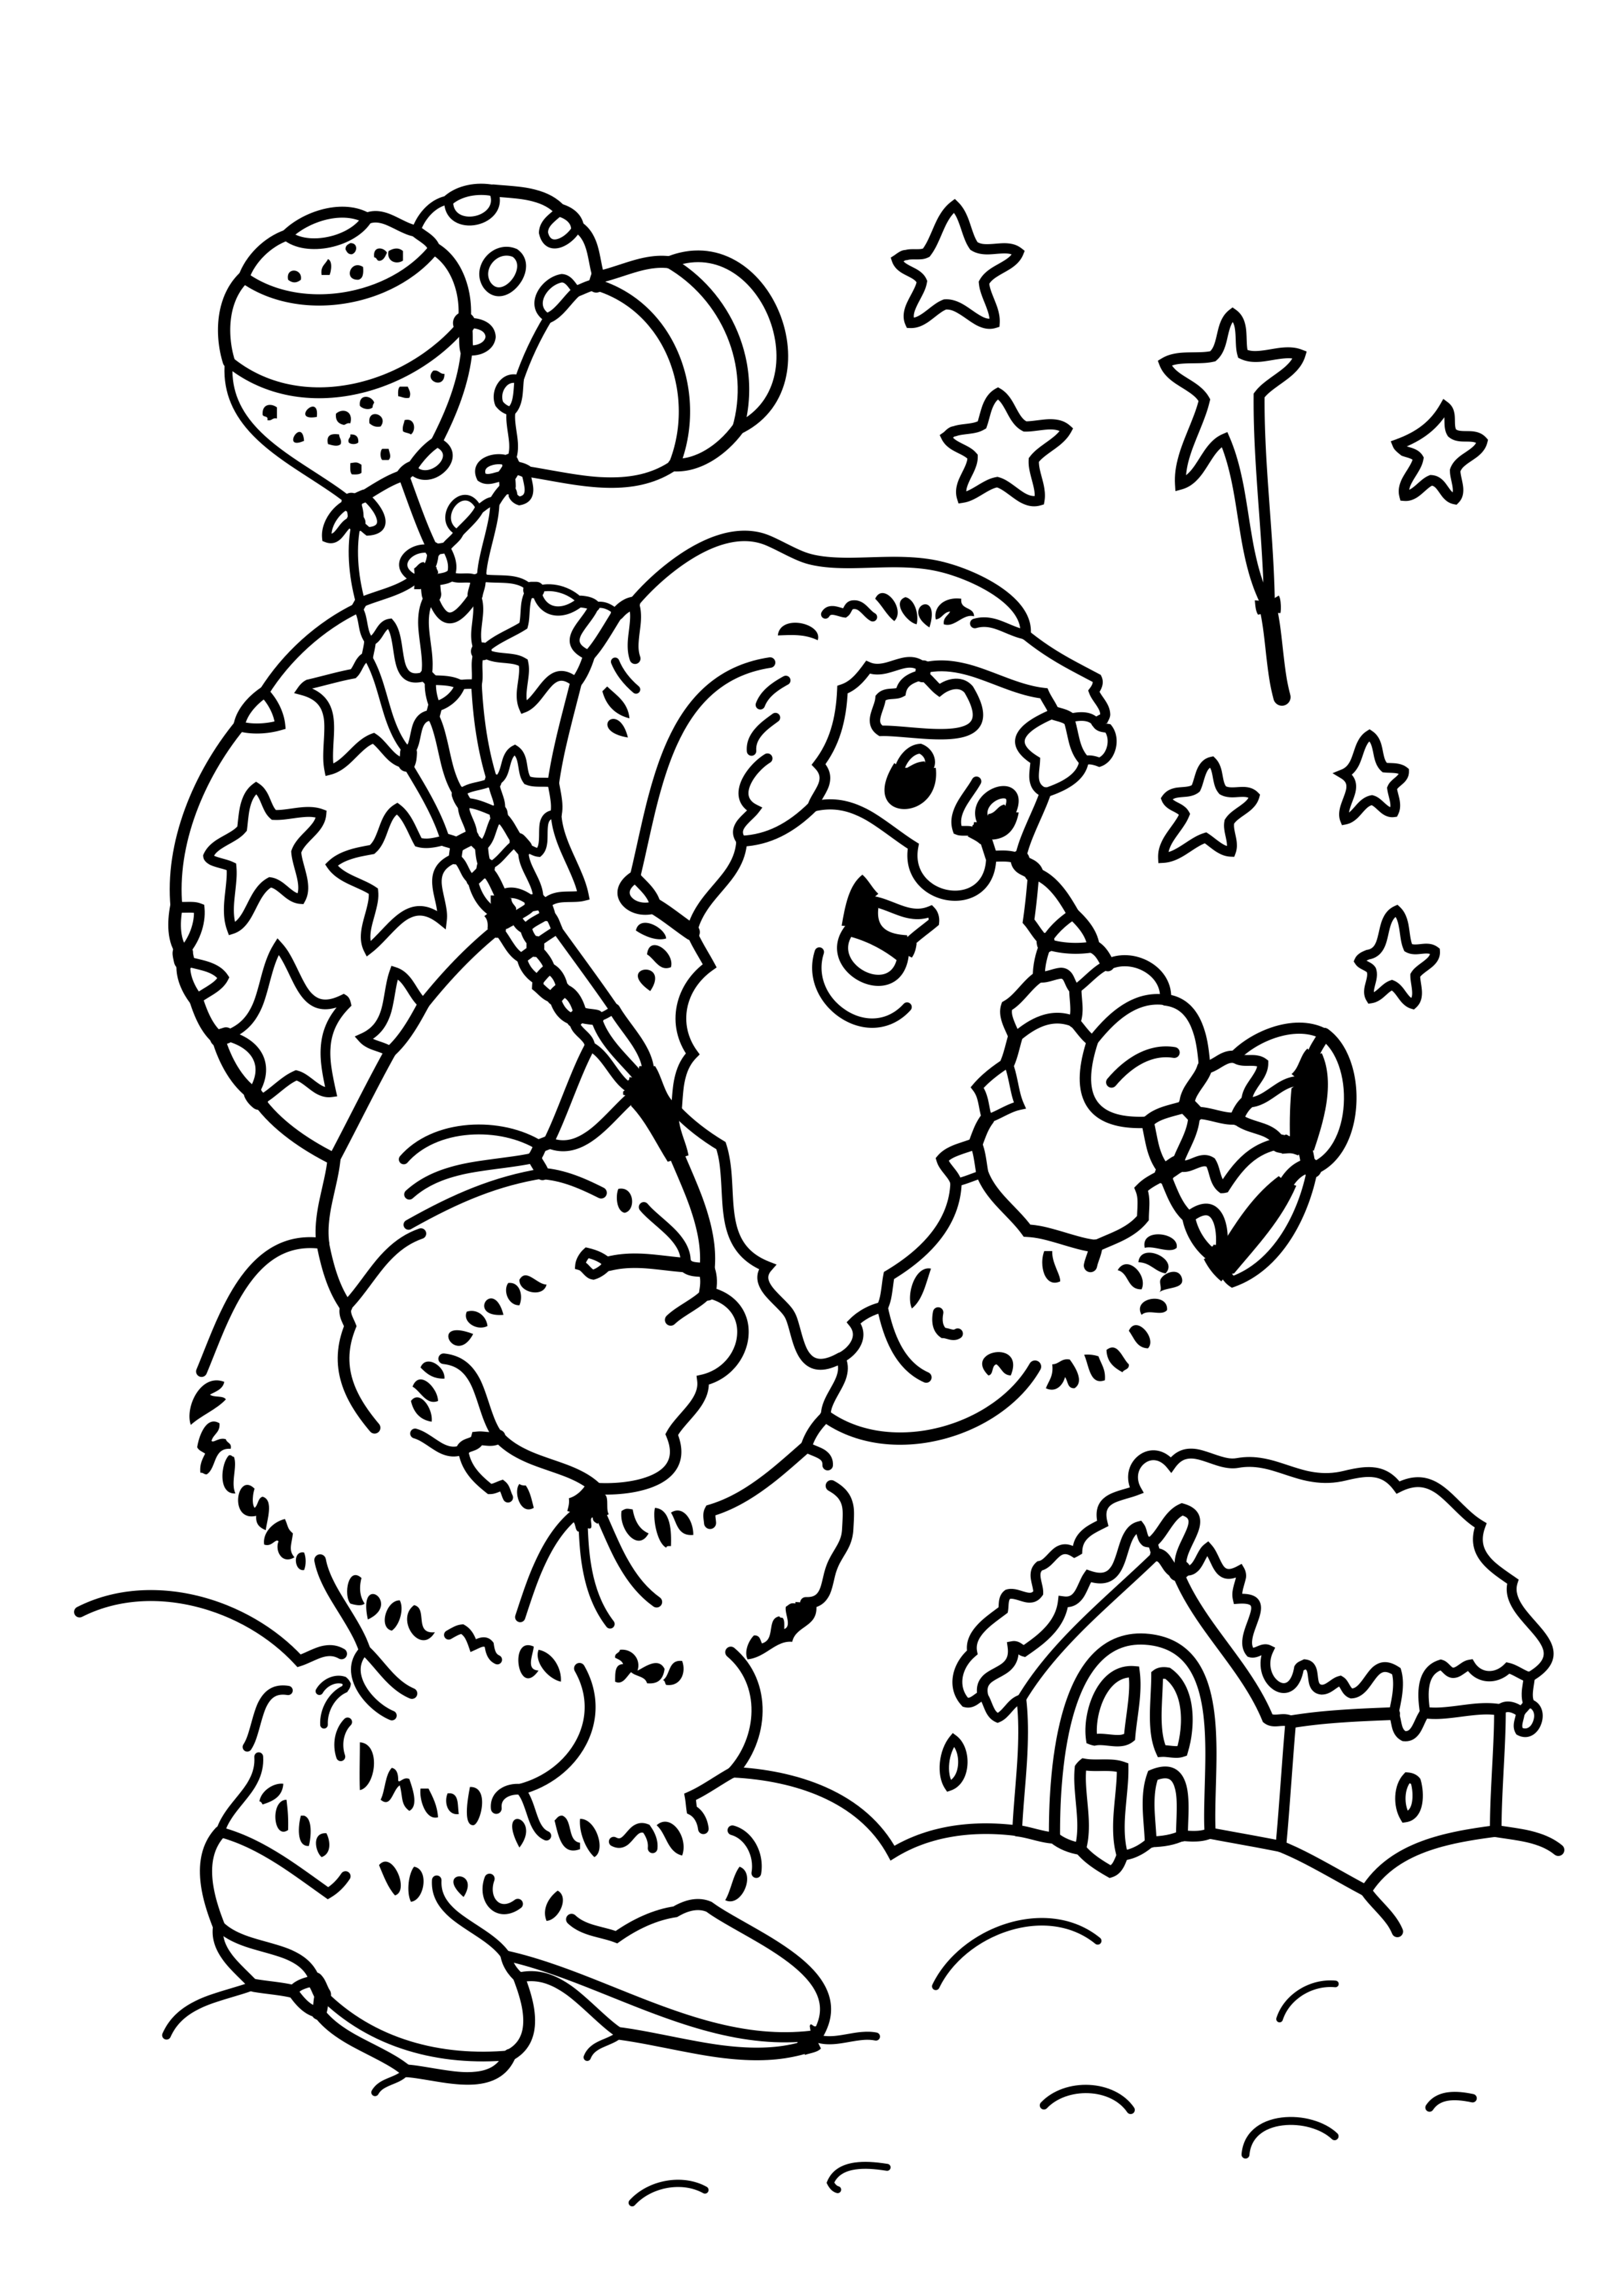 Drawing Santa Claus coloring page